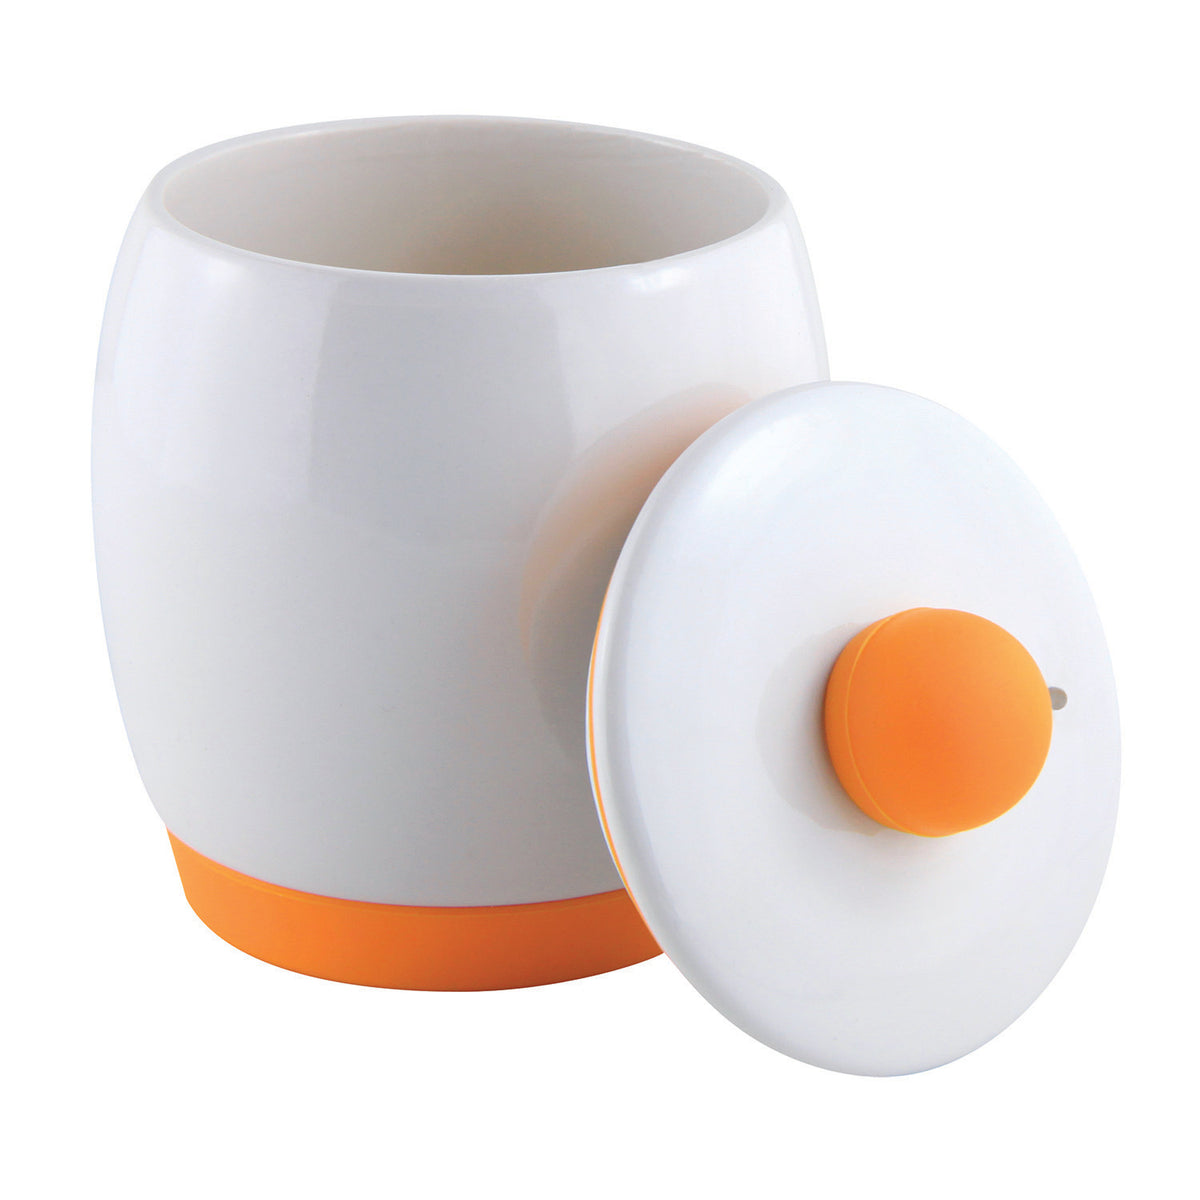 Eggy Ceramic Egg Cooker